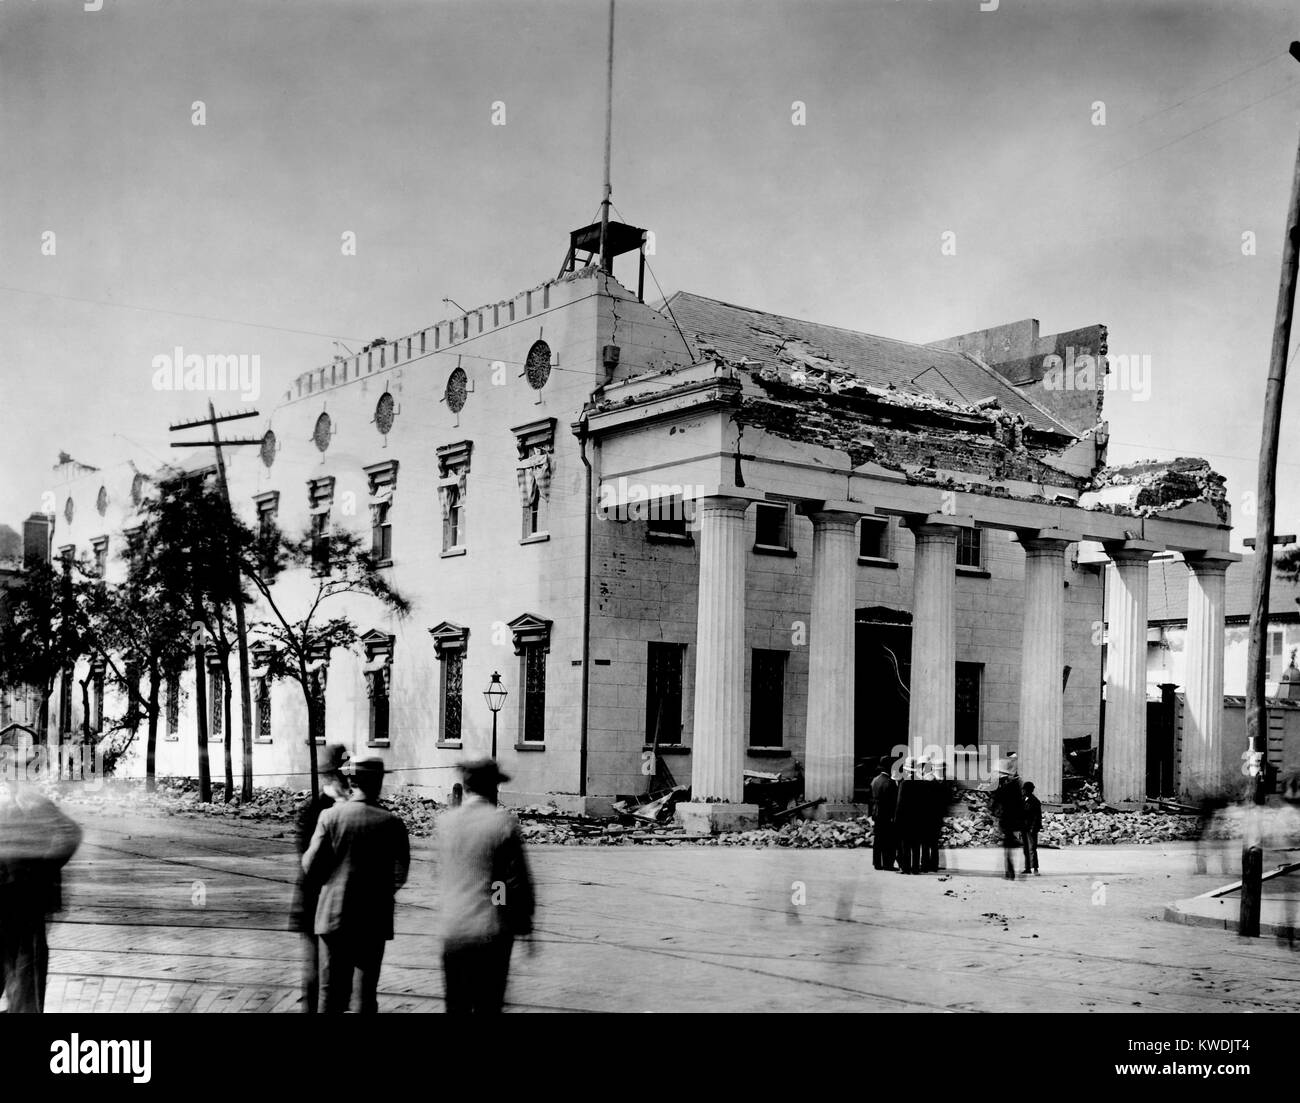 Die alte Hauptwache wurde von Charleston Erdbeben vom 31. August 1886 beschädigt. Die obere Wände, portico und Bewältigungsstrategien erlitten Hubraum. Foto von John K. Hillers (BSLOC_2017_17_55) Stockfoto